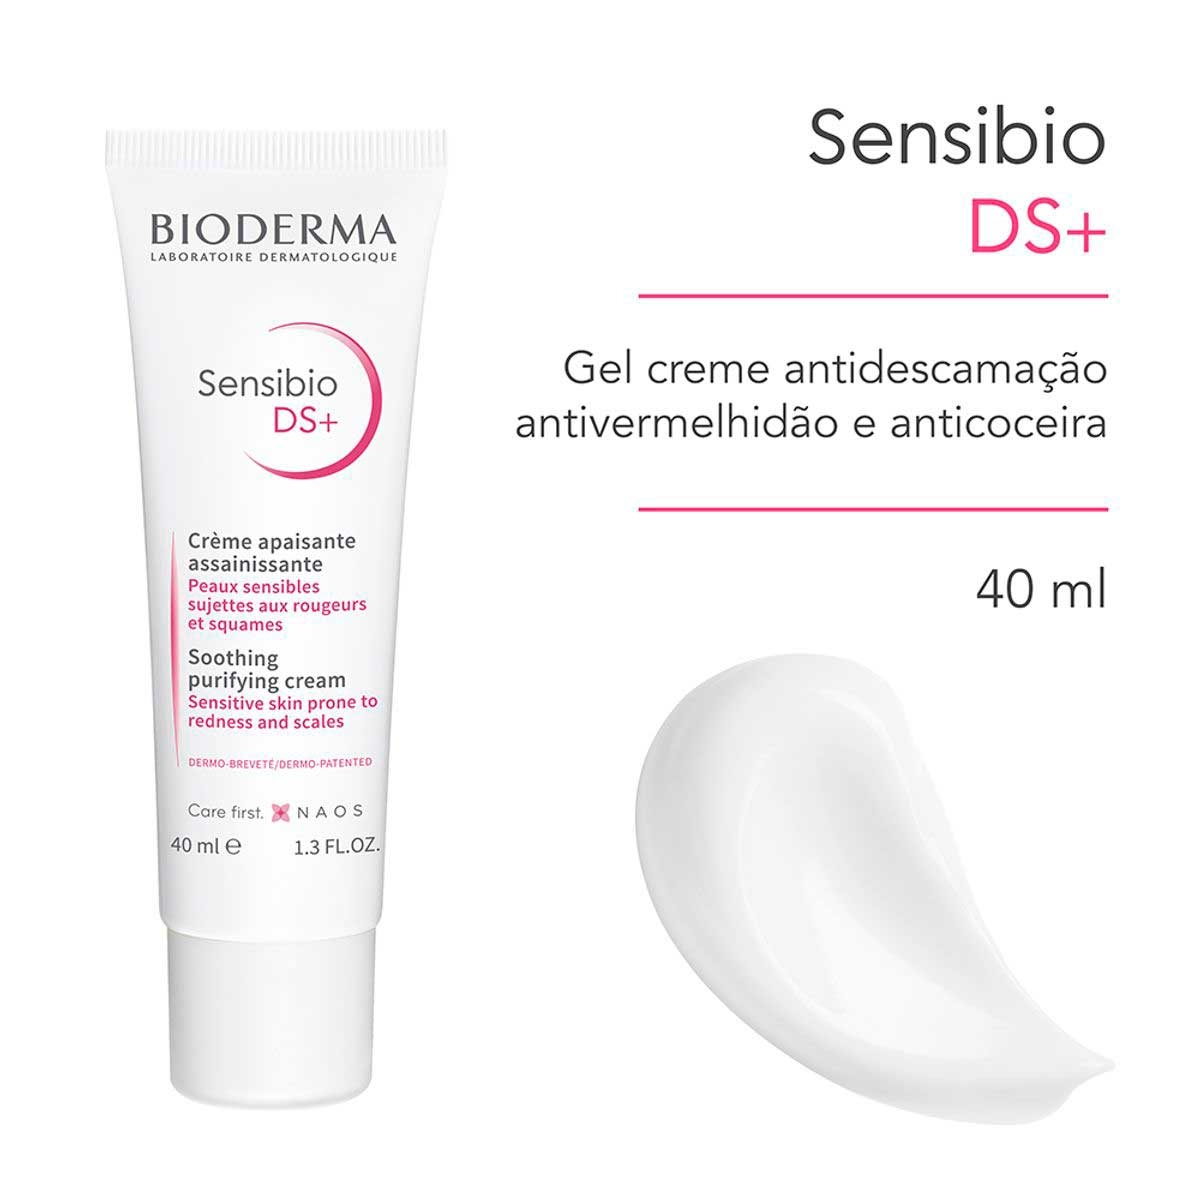 Gel Creme Antidescamação e Antivermelhidão Bioderma Sensibio DS+ com 40ml